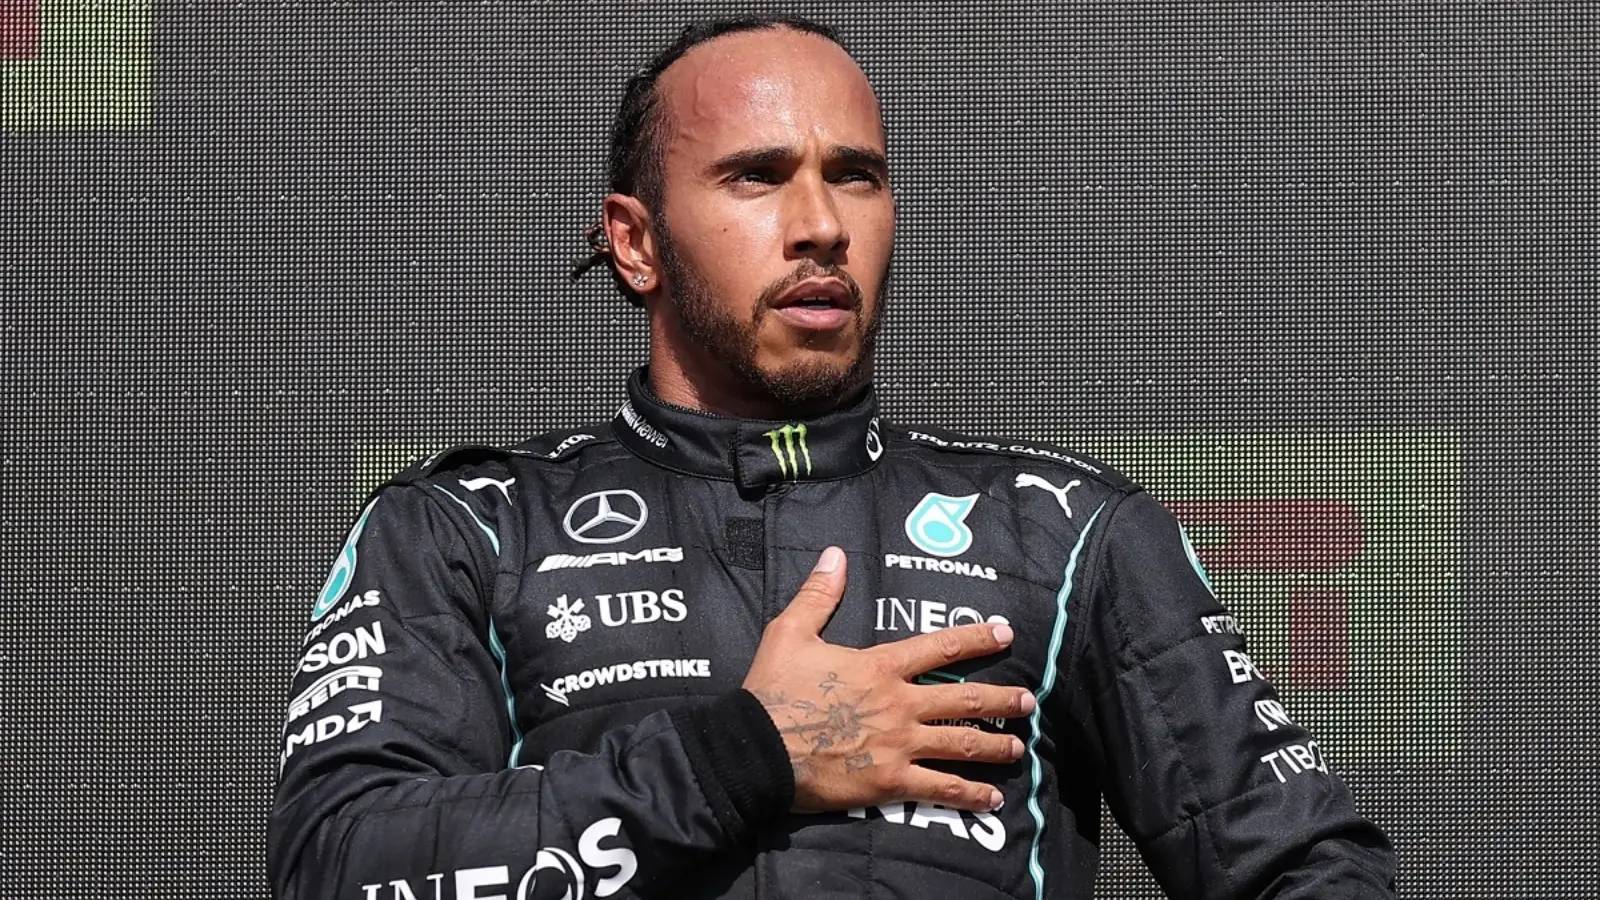 Fórmula 1 Lewis Hamilton Sorprendido anuncio ÚLTIMA VEZ Hecho FIA